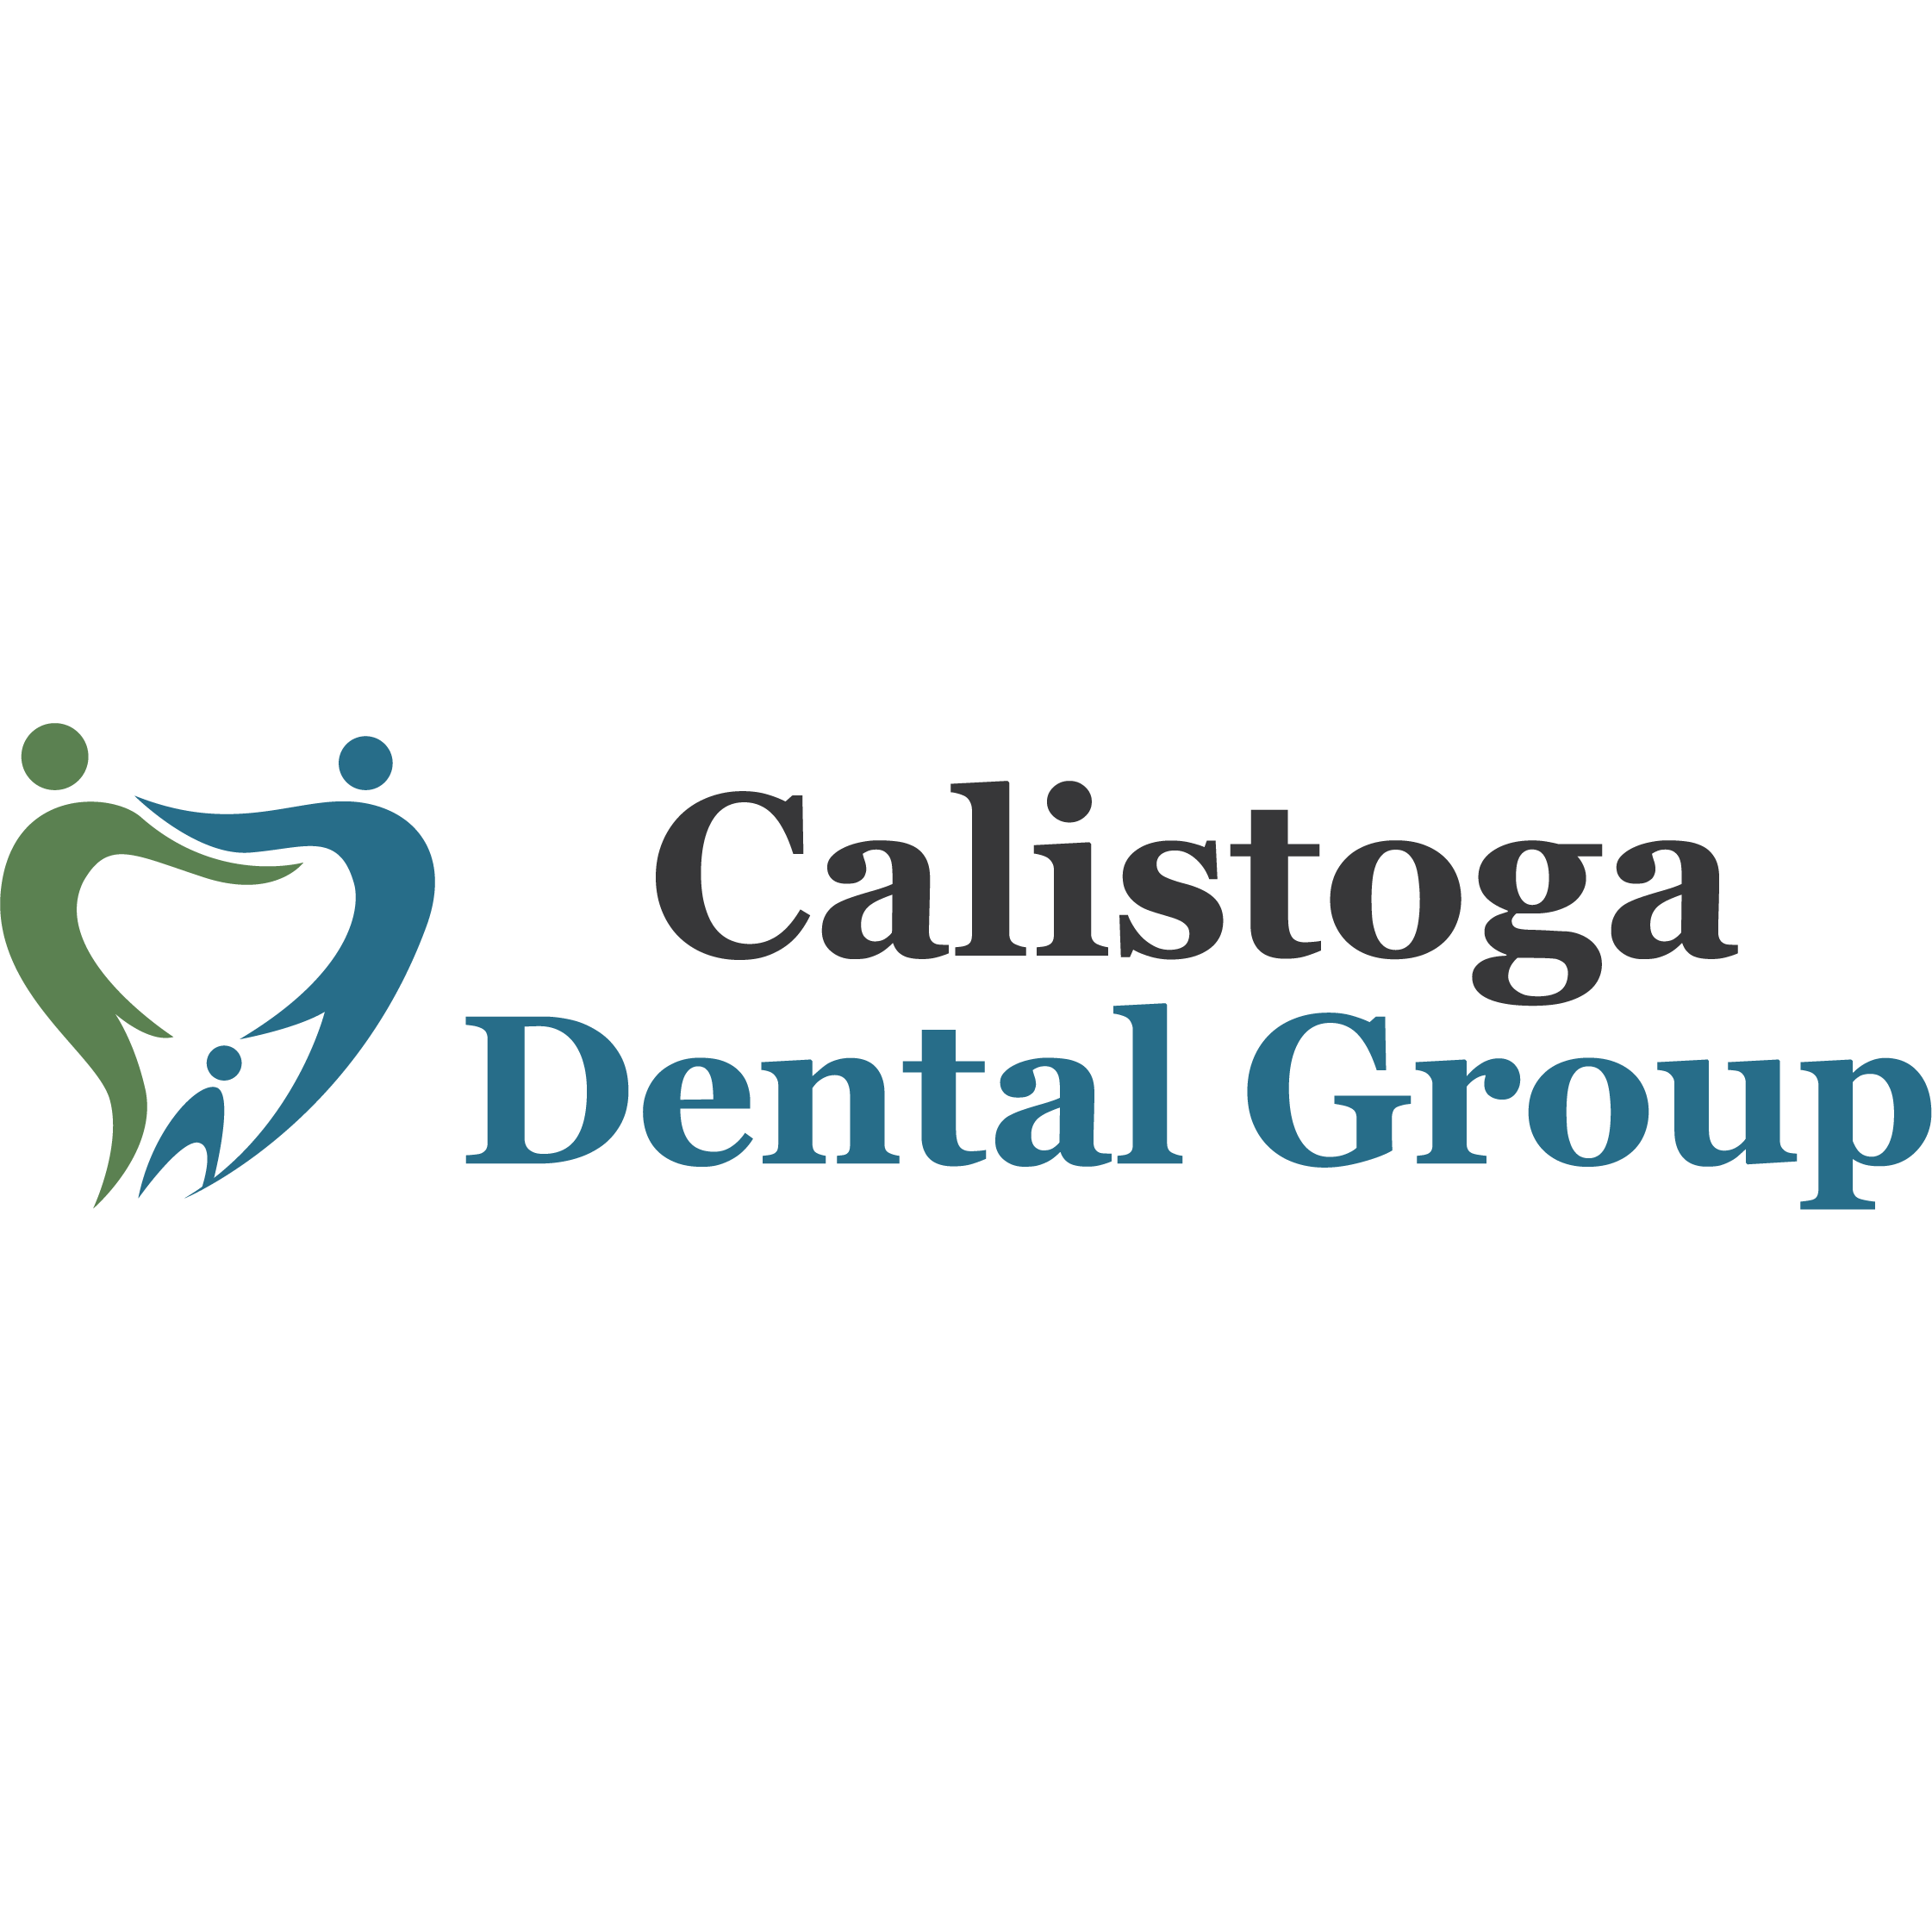 Calistoga Dental Group - Calistoga, CA 94515 - (707)709-6058 | ShowMeLocal.com